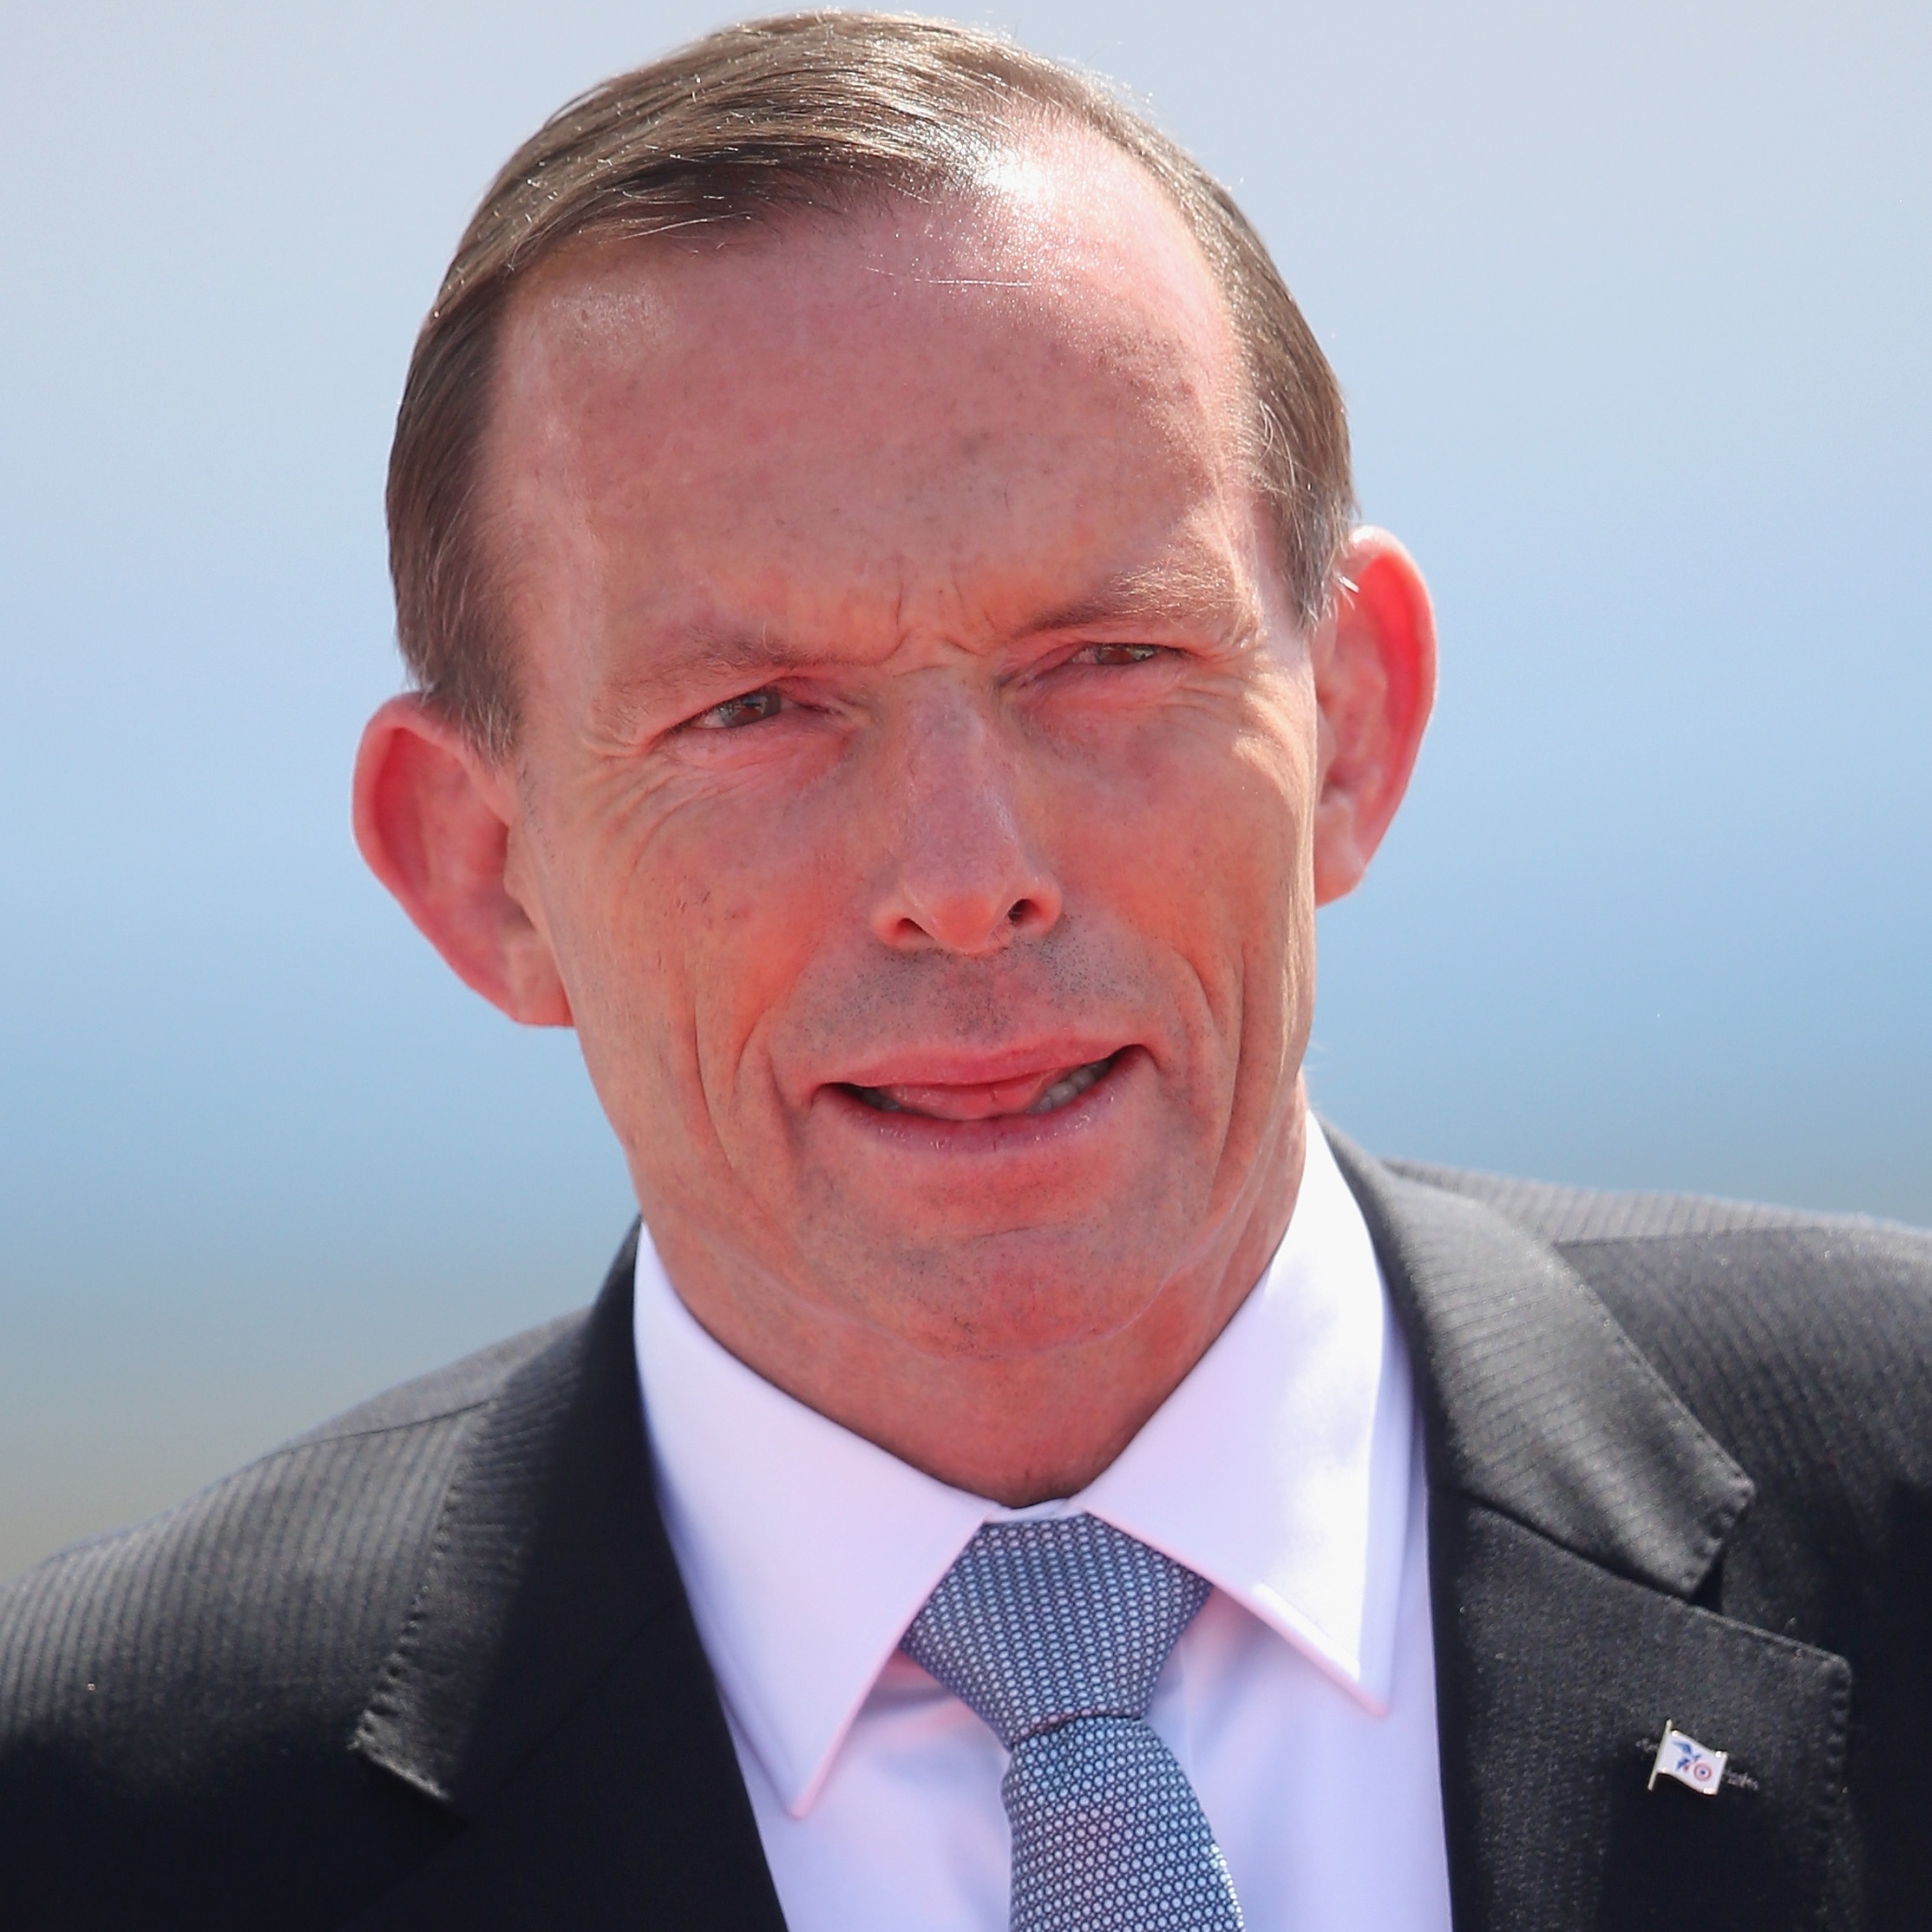 Former Aussie PM Tony Abbott